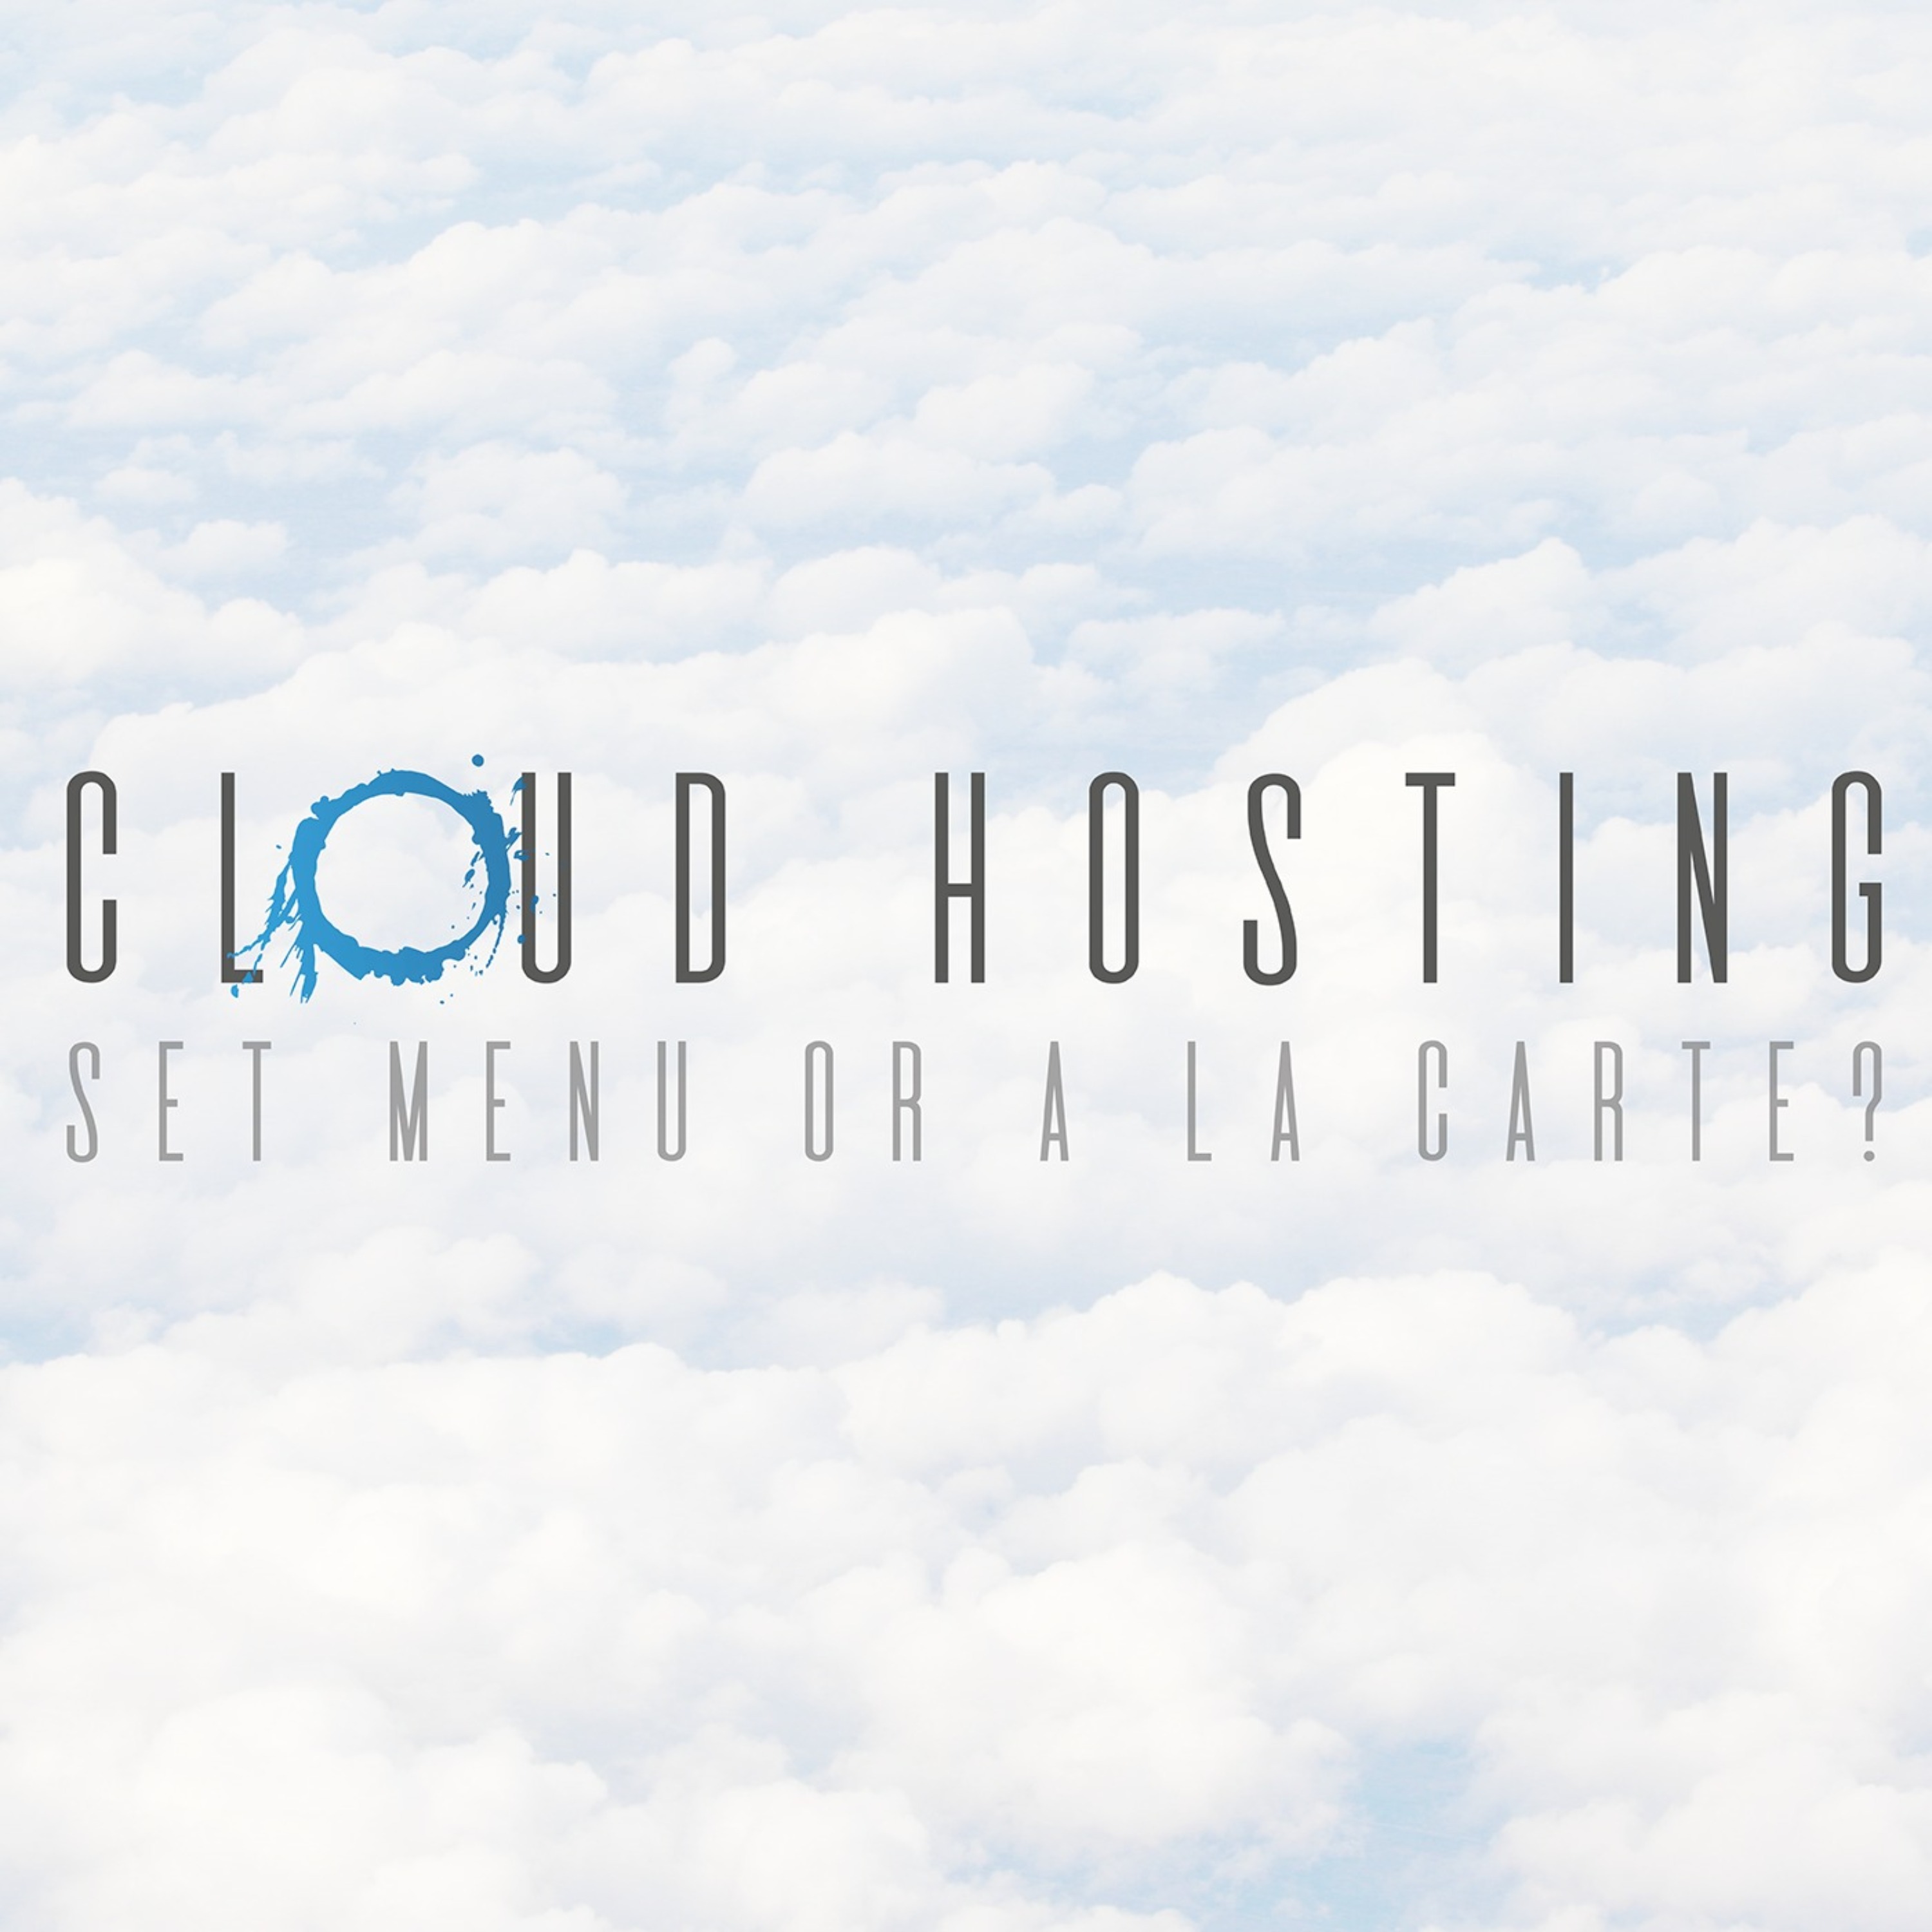 Cloud Hosting